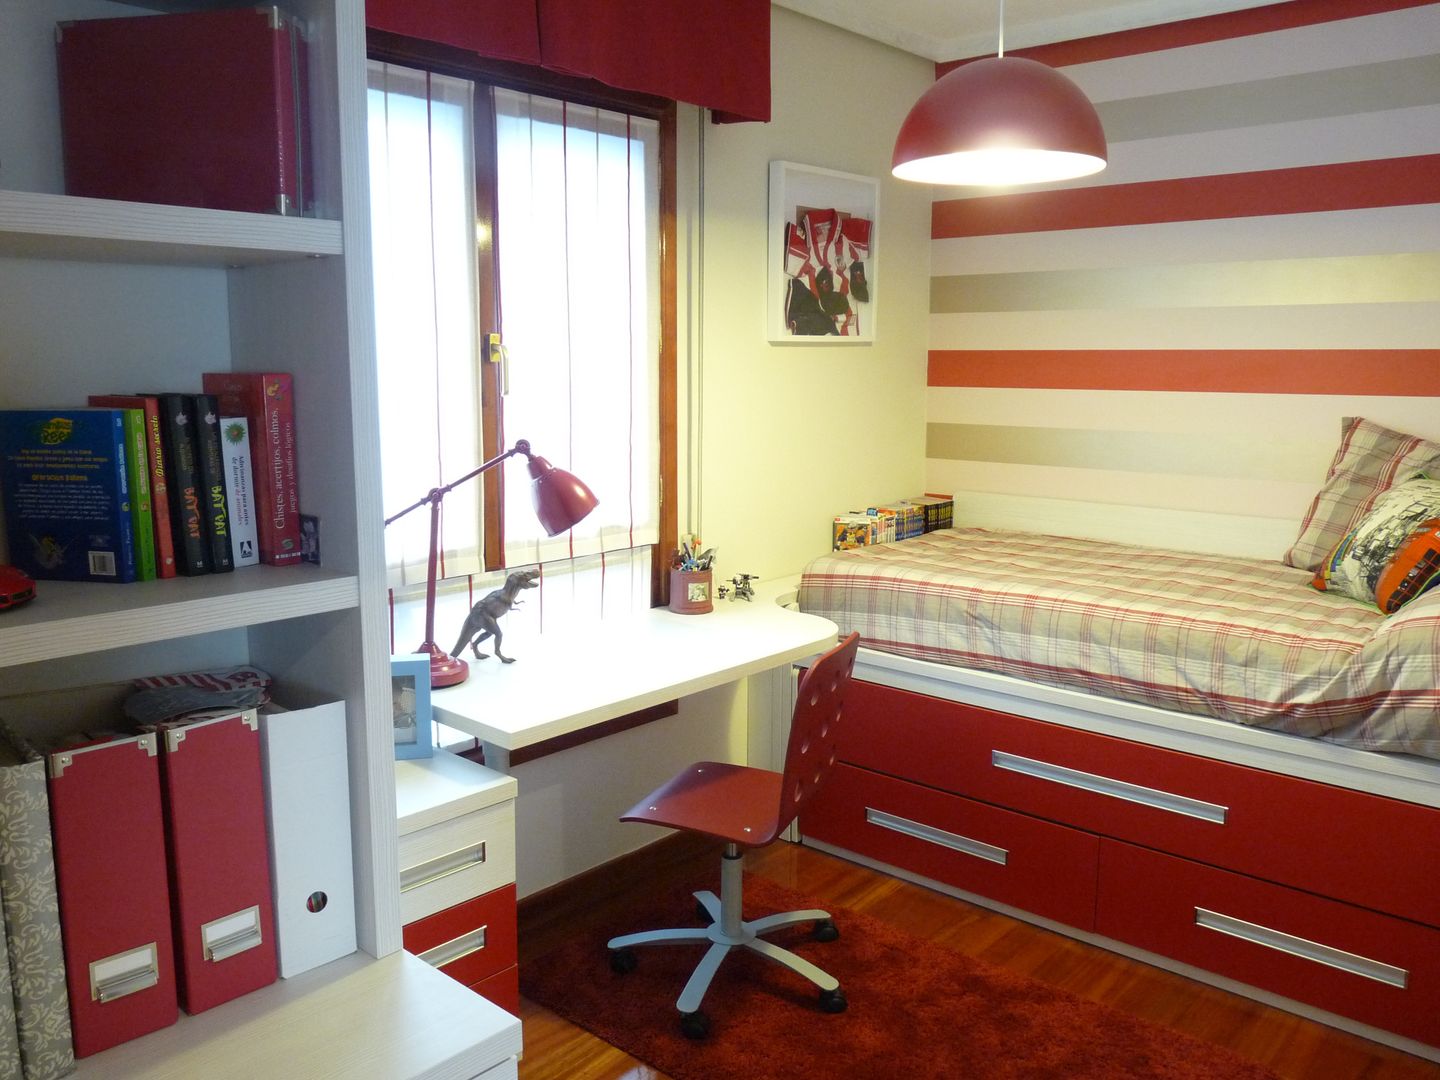 Una habitación juvenil para un joven gran seguidor del Athletic de Bilbao, Dec&You Dec&You غرفة الاطفال